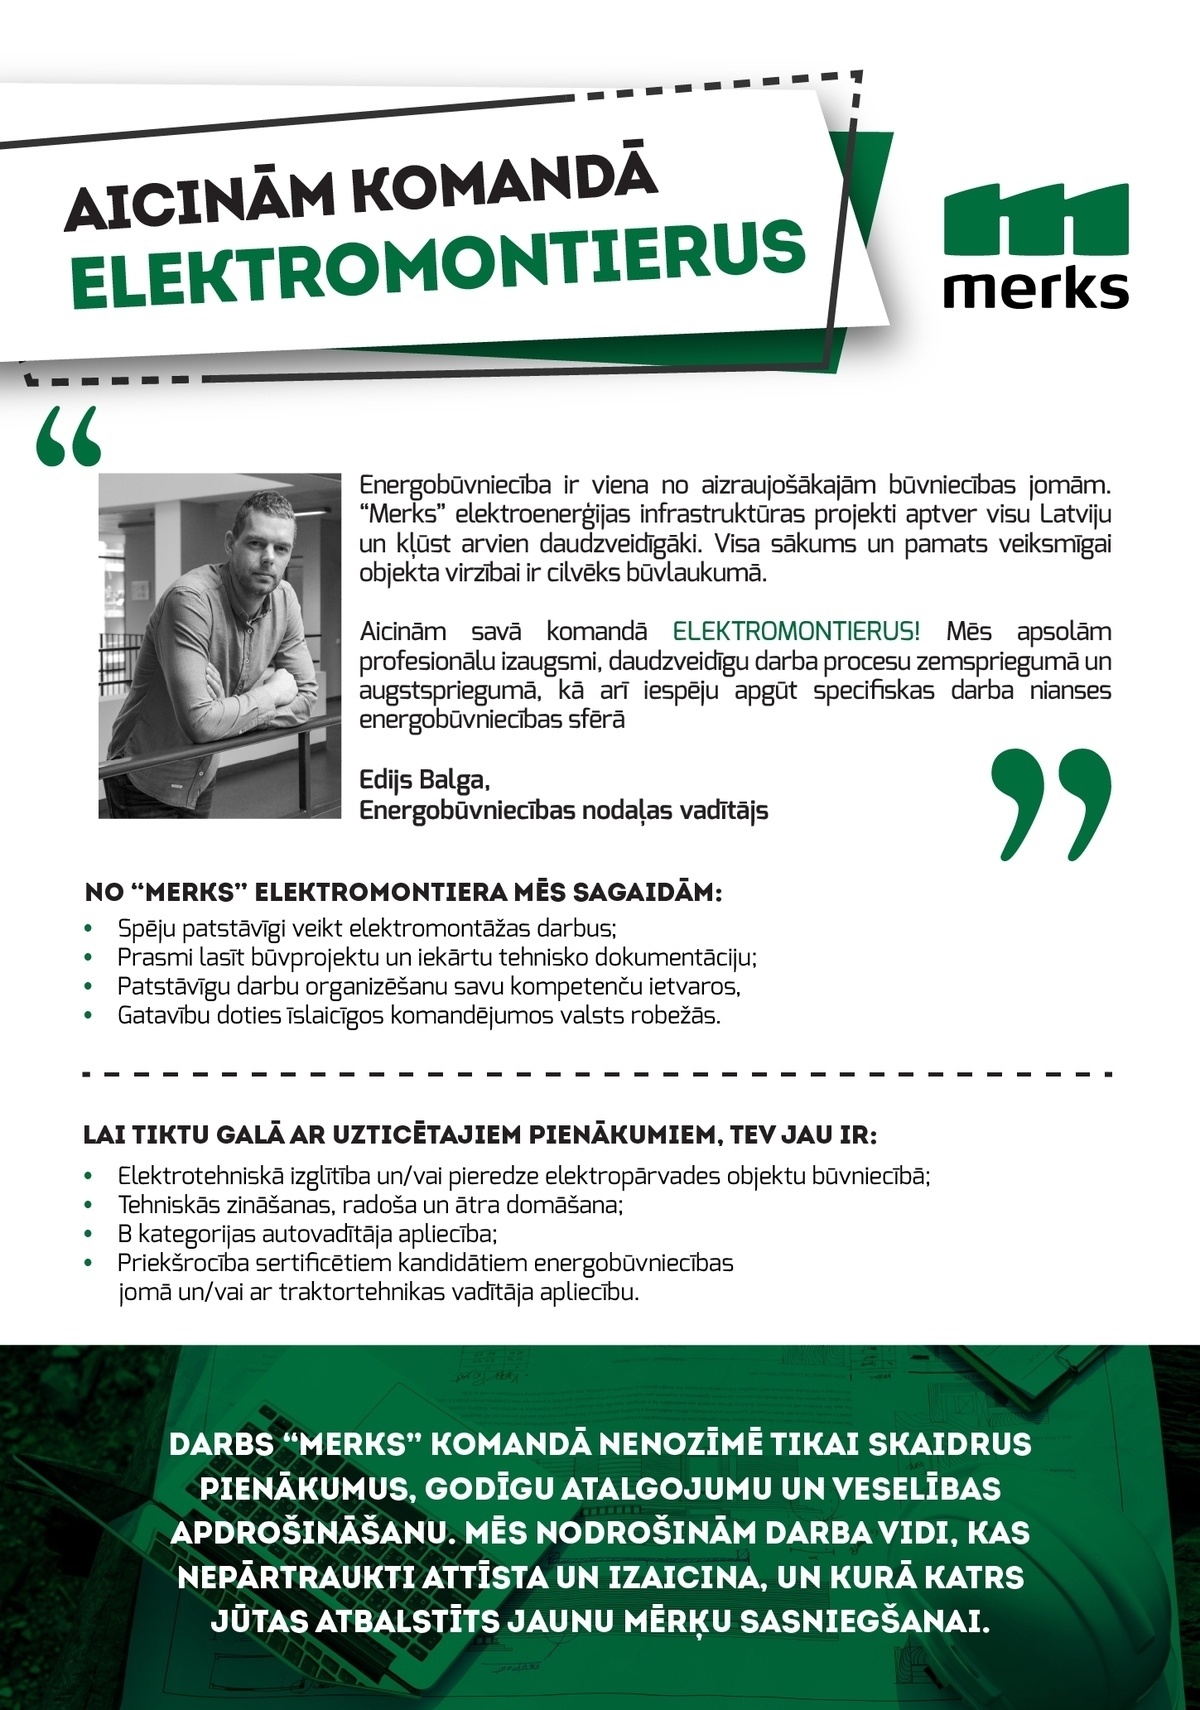 Merks, SIA Elektromontieris/-e